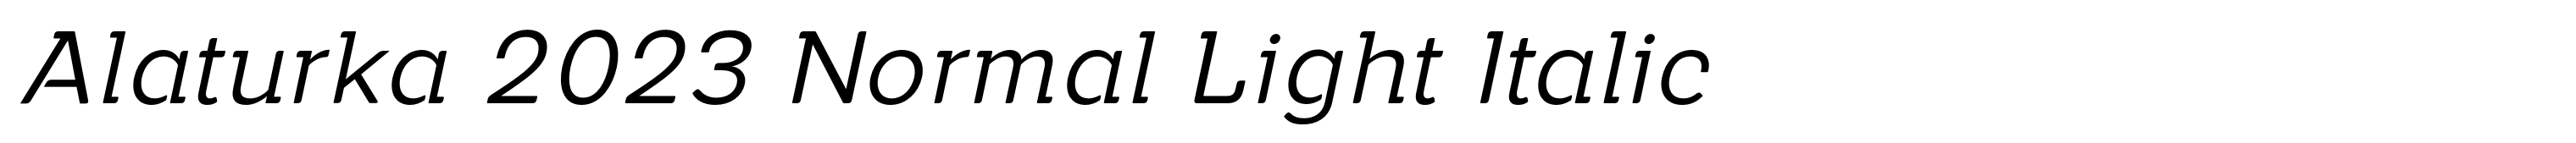 Alaturka 2023 Normal Light Italic